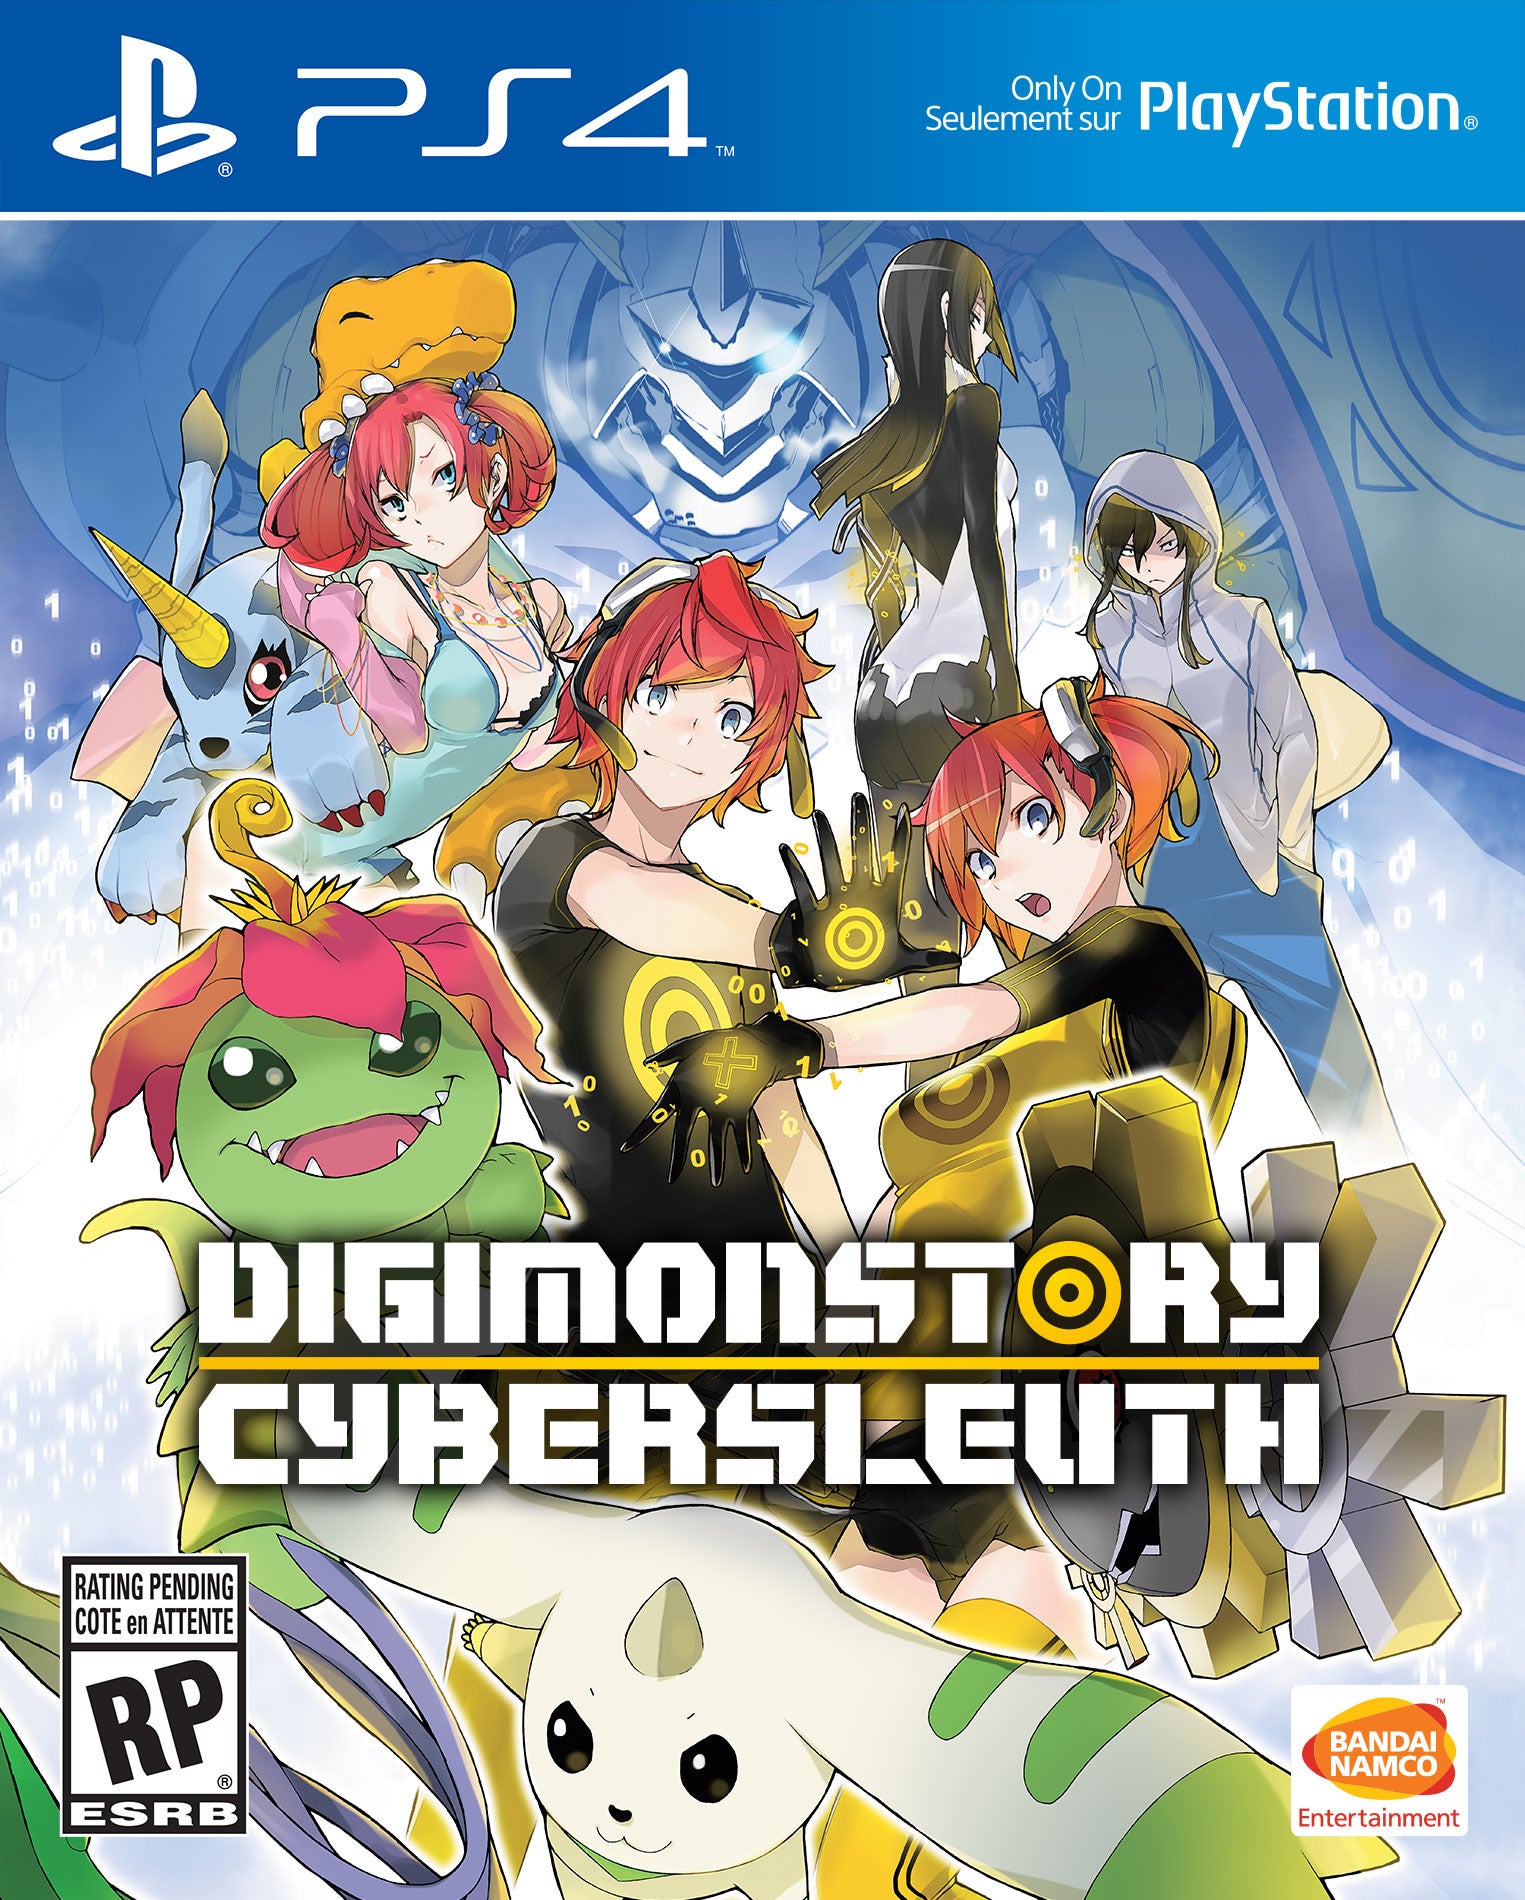 Imagem para Digimon Story: Cyber Sleuth Chega em Fevereiro aos EUA